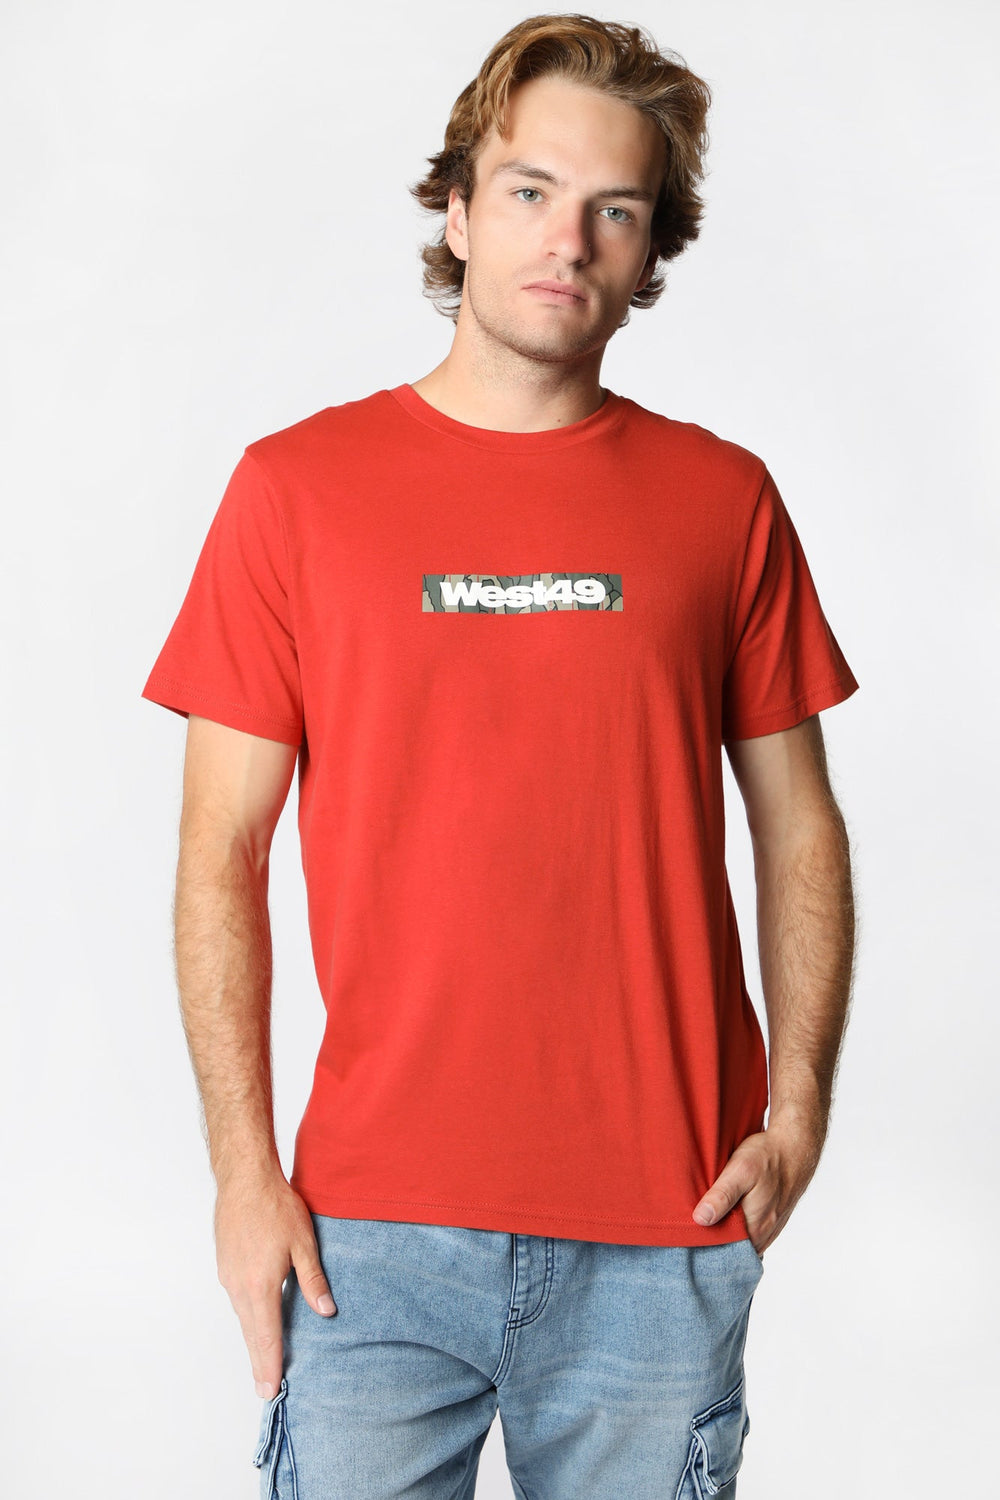 T-Shirt Imprimé Logo Camo Montagne West49 Homme T-Shirt Imprimé Logo Camo Montagne West49 Homme